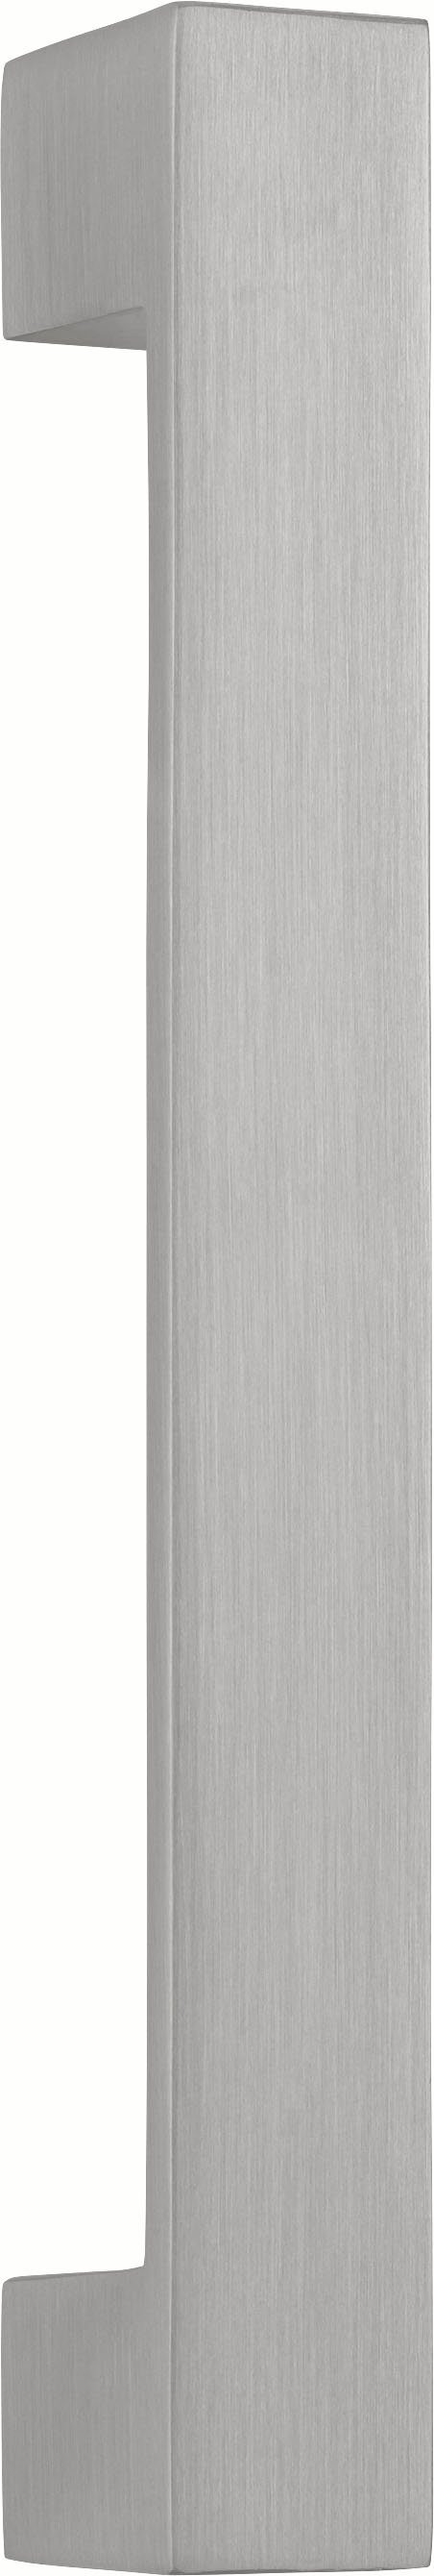 HELD MÖBEL Spülenschrank Tinnum | Metallgriffe, 120 cm Einbauspüle weiß inklusive MDF-Fronten, breit, weiß